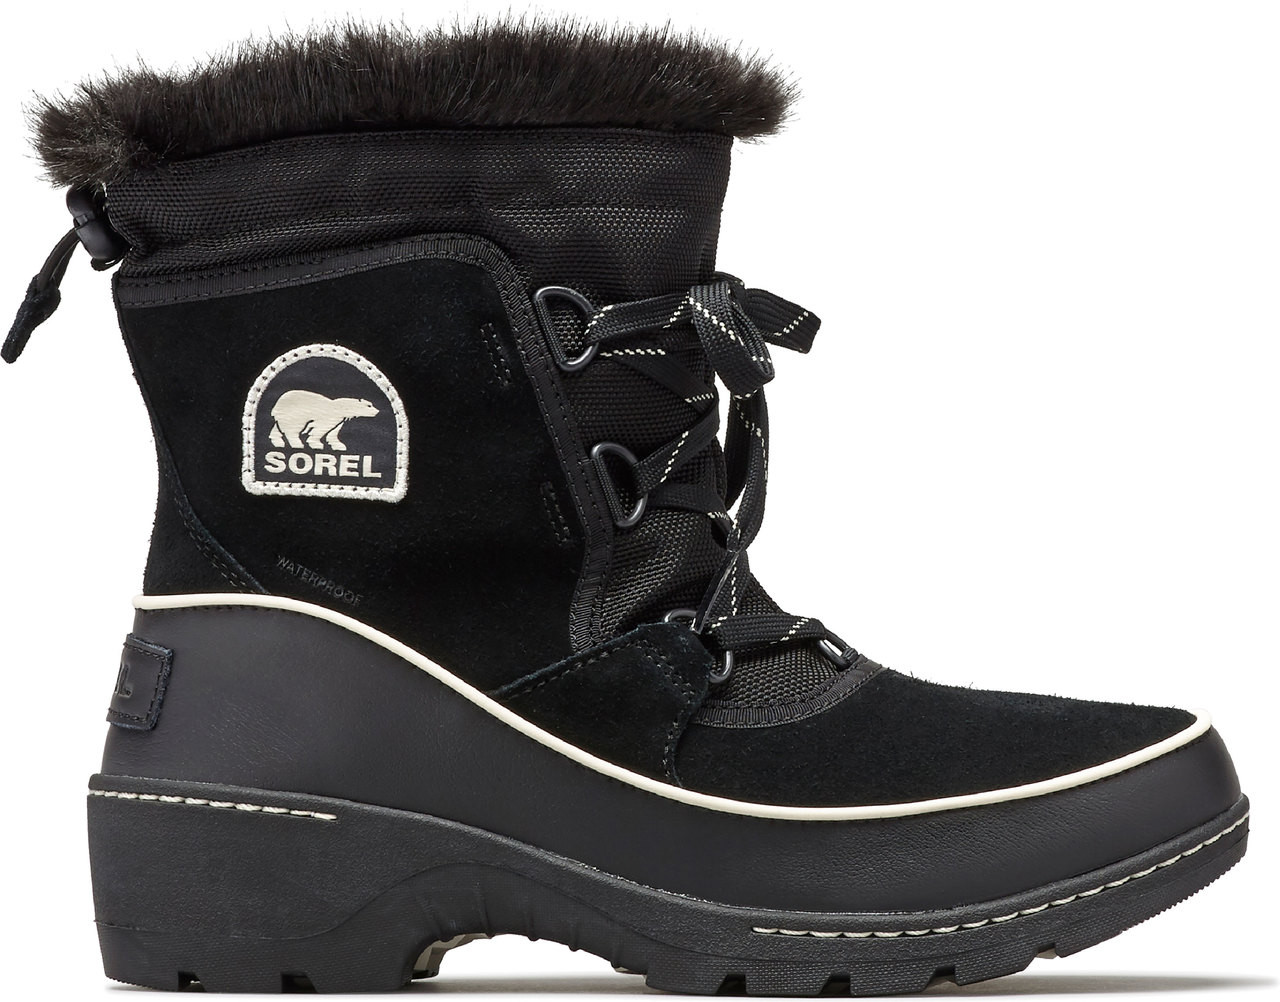 sorel womens boots black